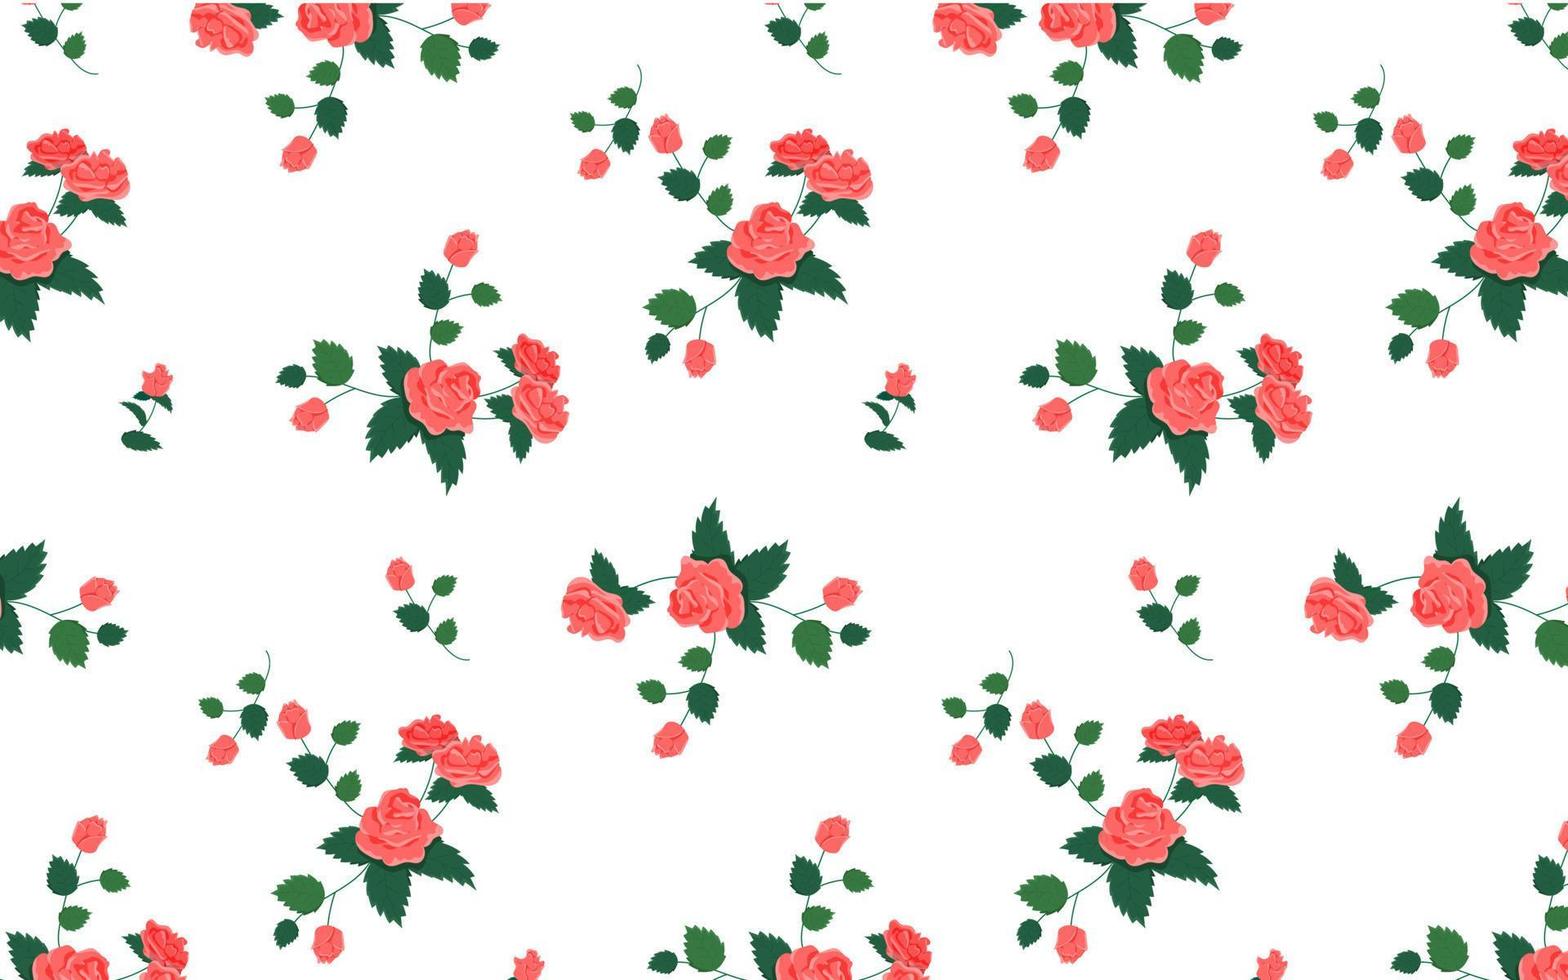 abstract roze roos naadloos patroon. mooi verstrooien van roos bloem vector